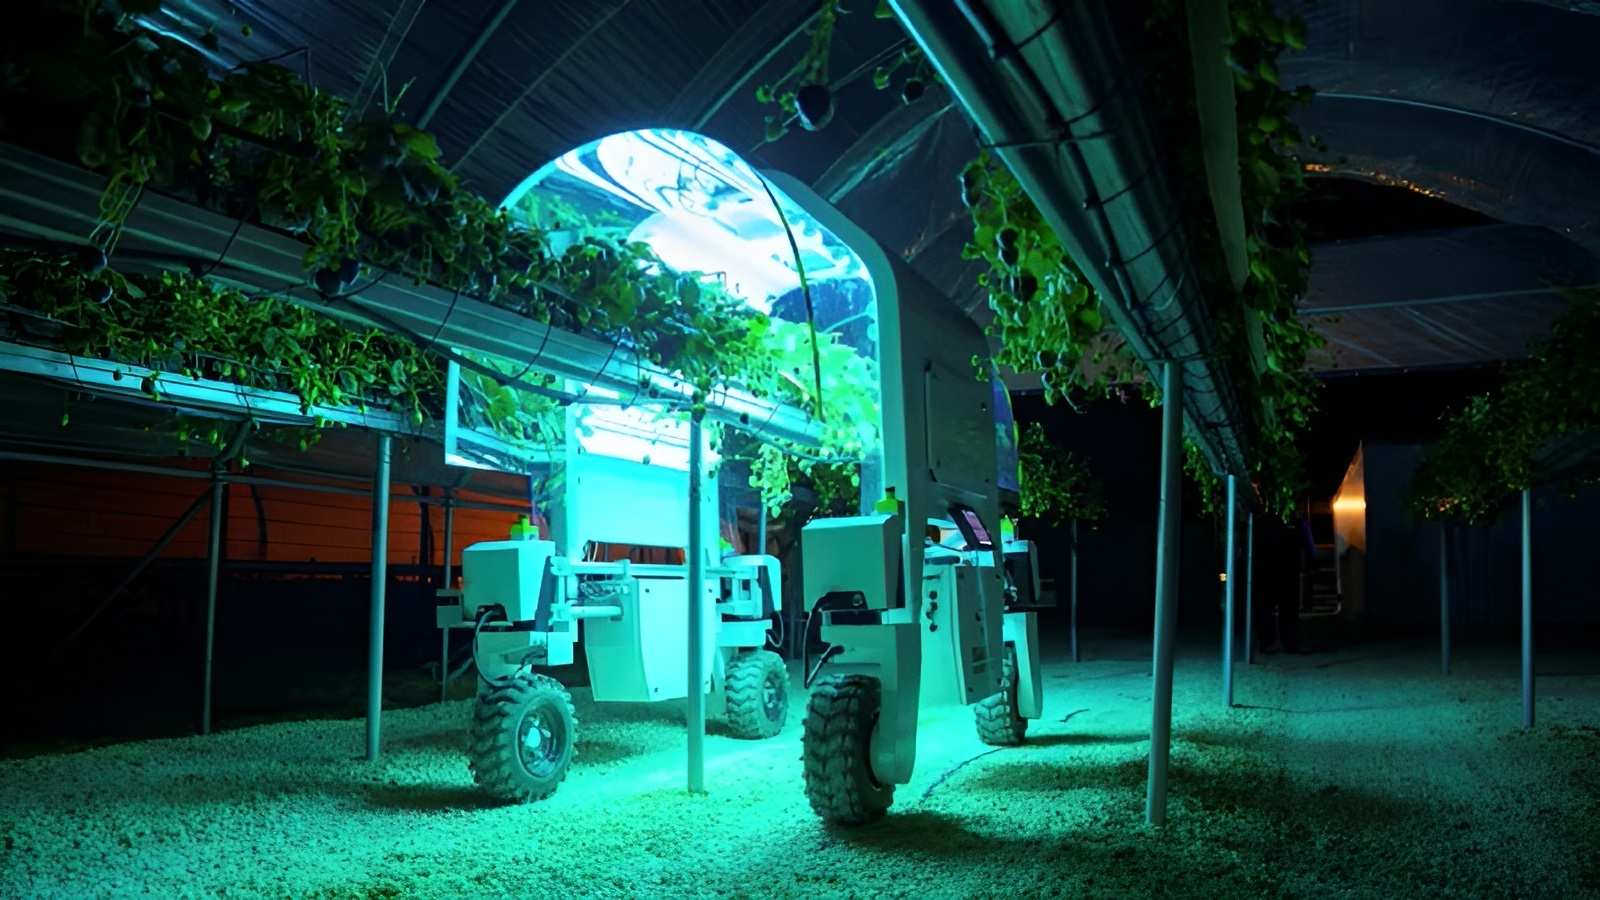 Hình ảnh minh họa chú robot thu hoạch nông sản vào ban đêm